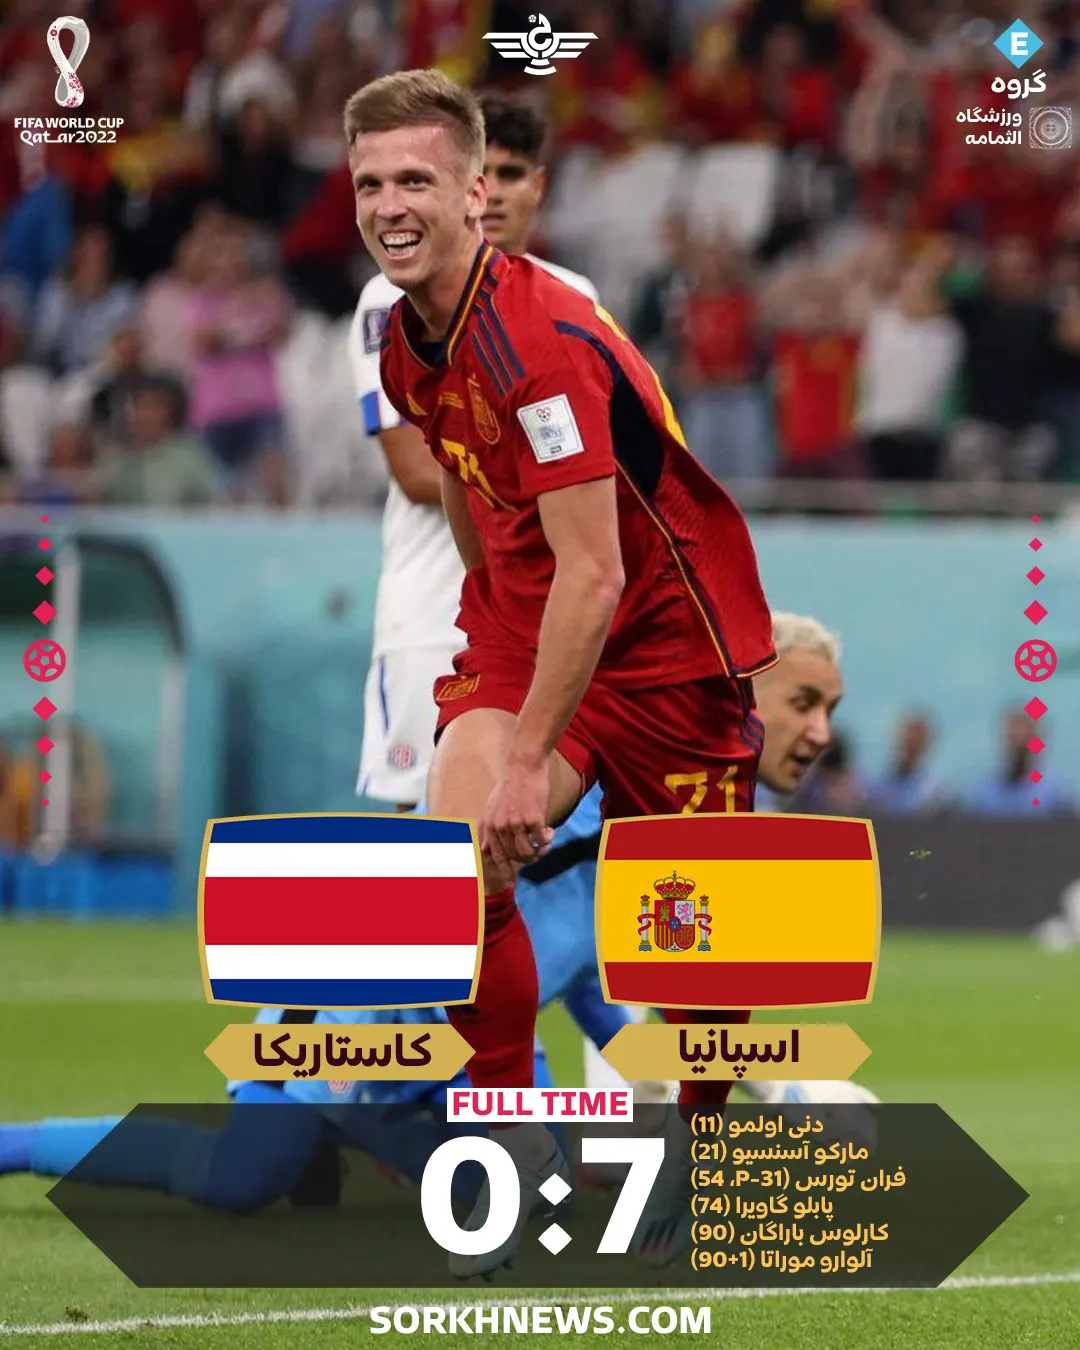 نتیجه بازی اسپانیا کاستاریکا